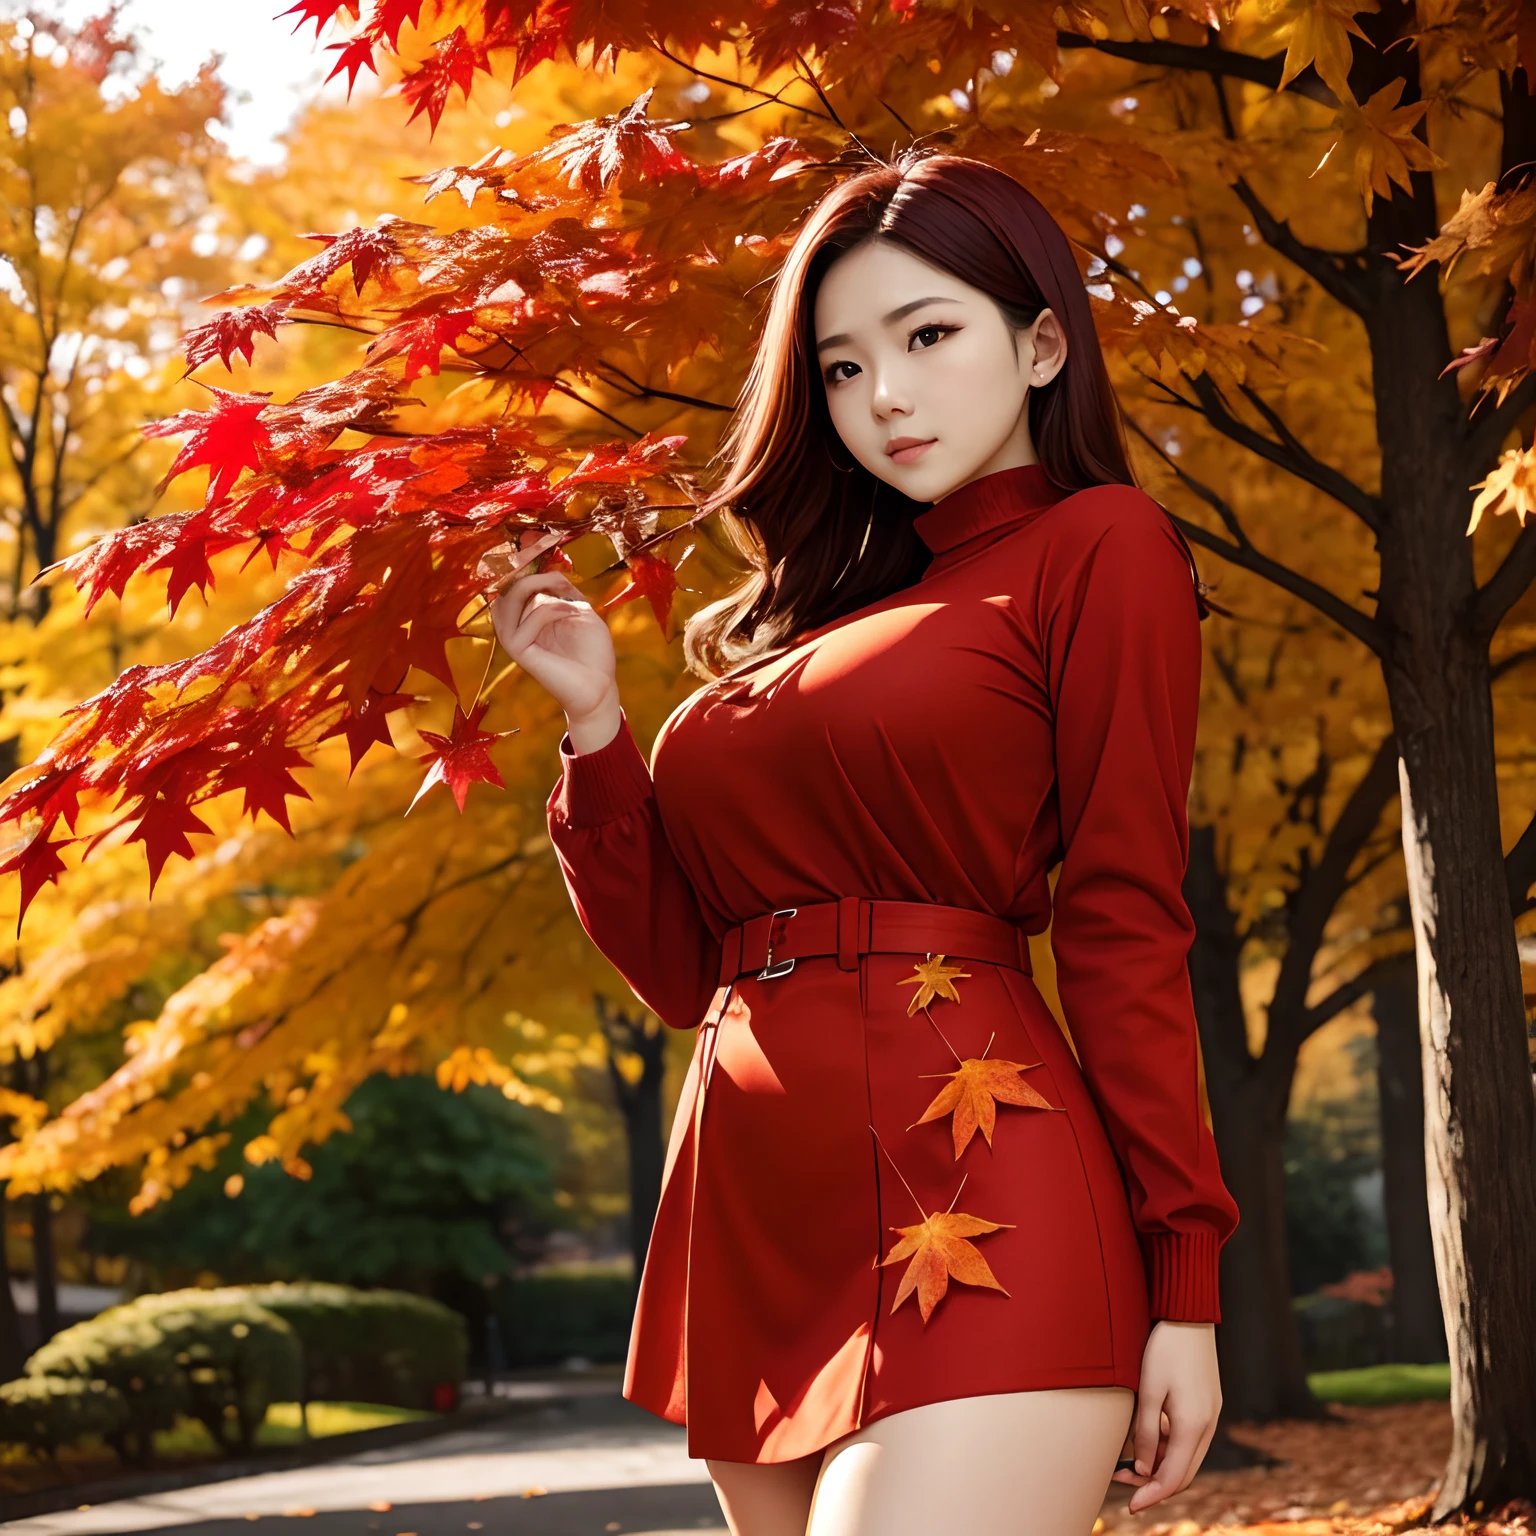 Un árbol con hojas de otoño sosteniendo hojas de arce con hojas rojas brillantes en sus manos々Mujer joven en ropa de otoño mirando, giga_tetona, tiro de cuerpo completo